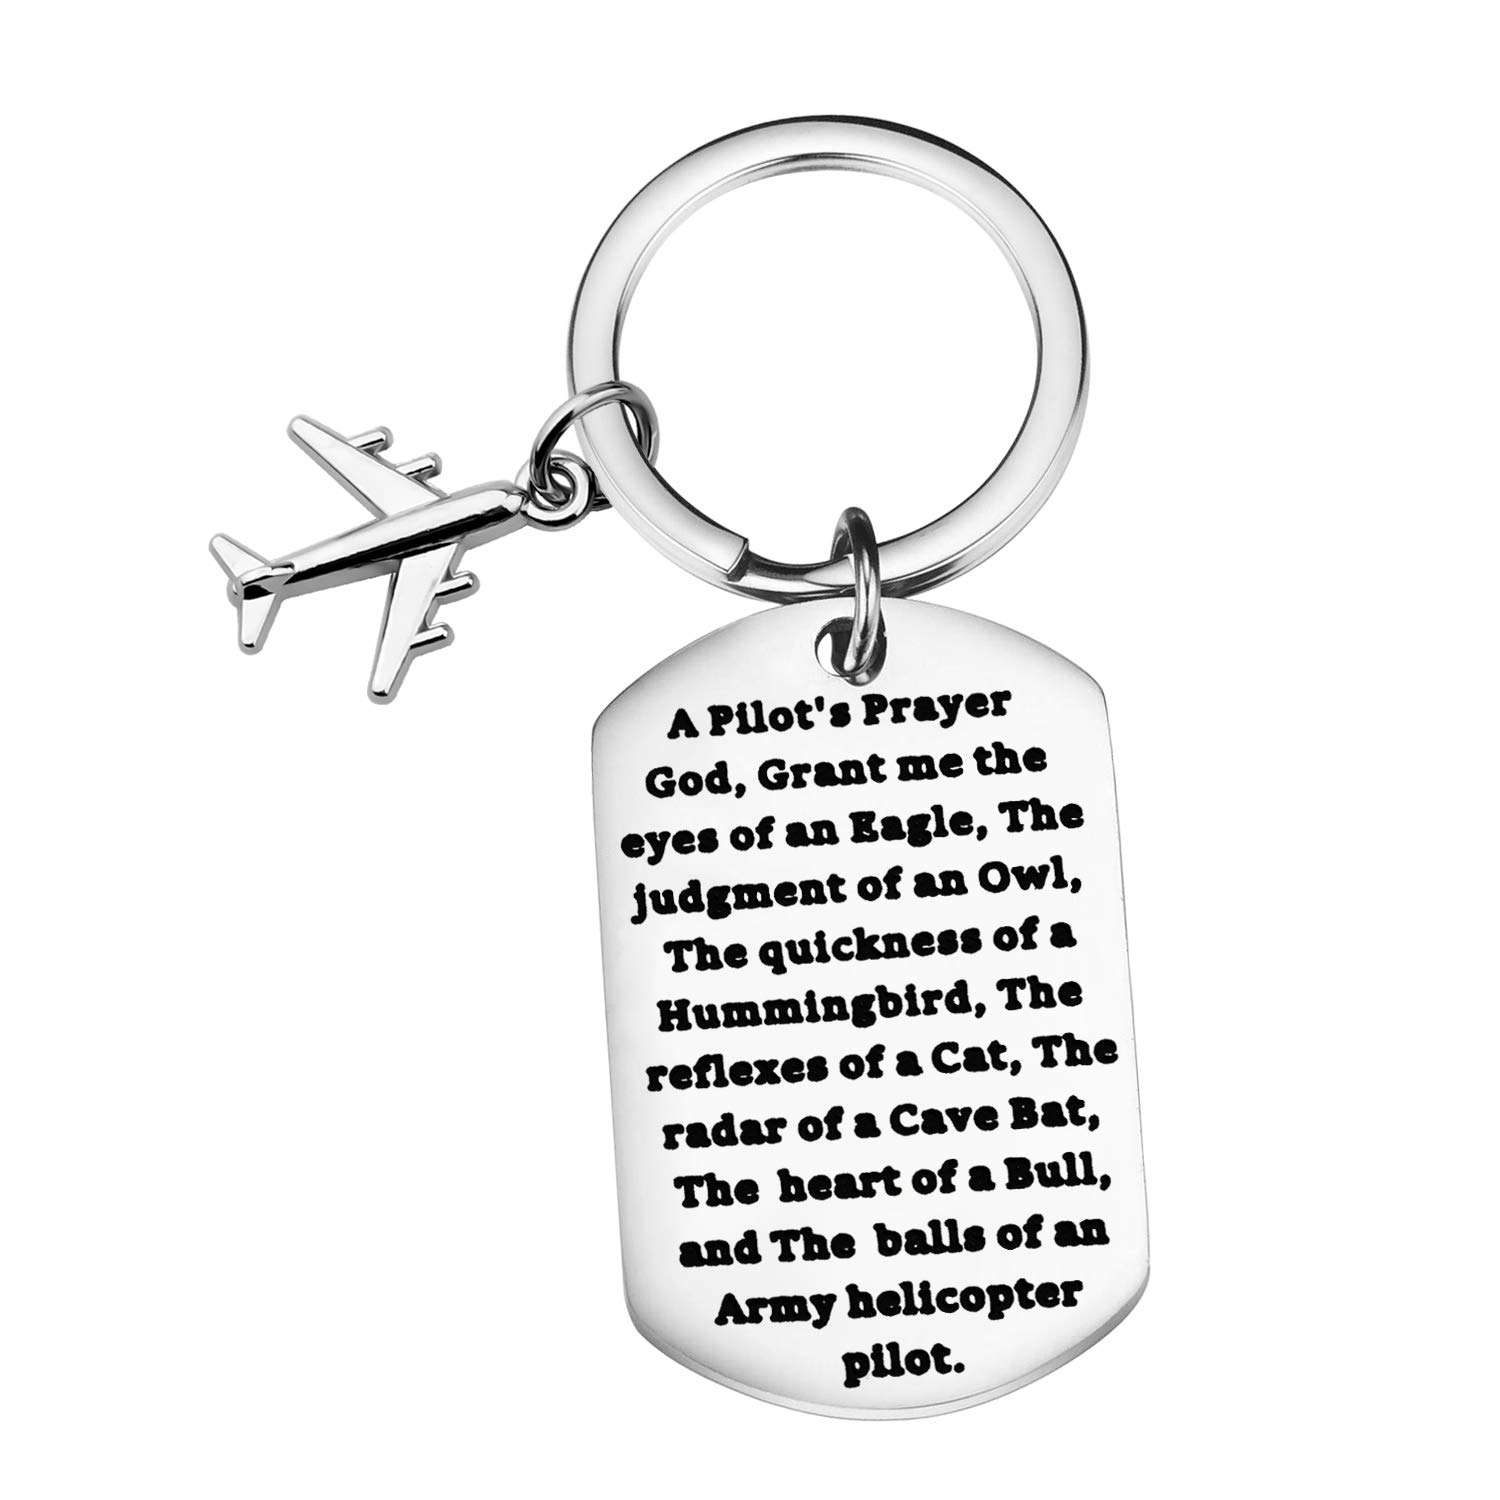 Lywjyb Birdgot Pilotengeschenk Pilotengebet Schlüsselanhänger Flugbegleiter Geschenk Hubschrauber Pilot Schlüsselanhänger, Lange, 1.57 * 0.98inch von Lywjyb Birdgot